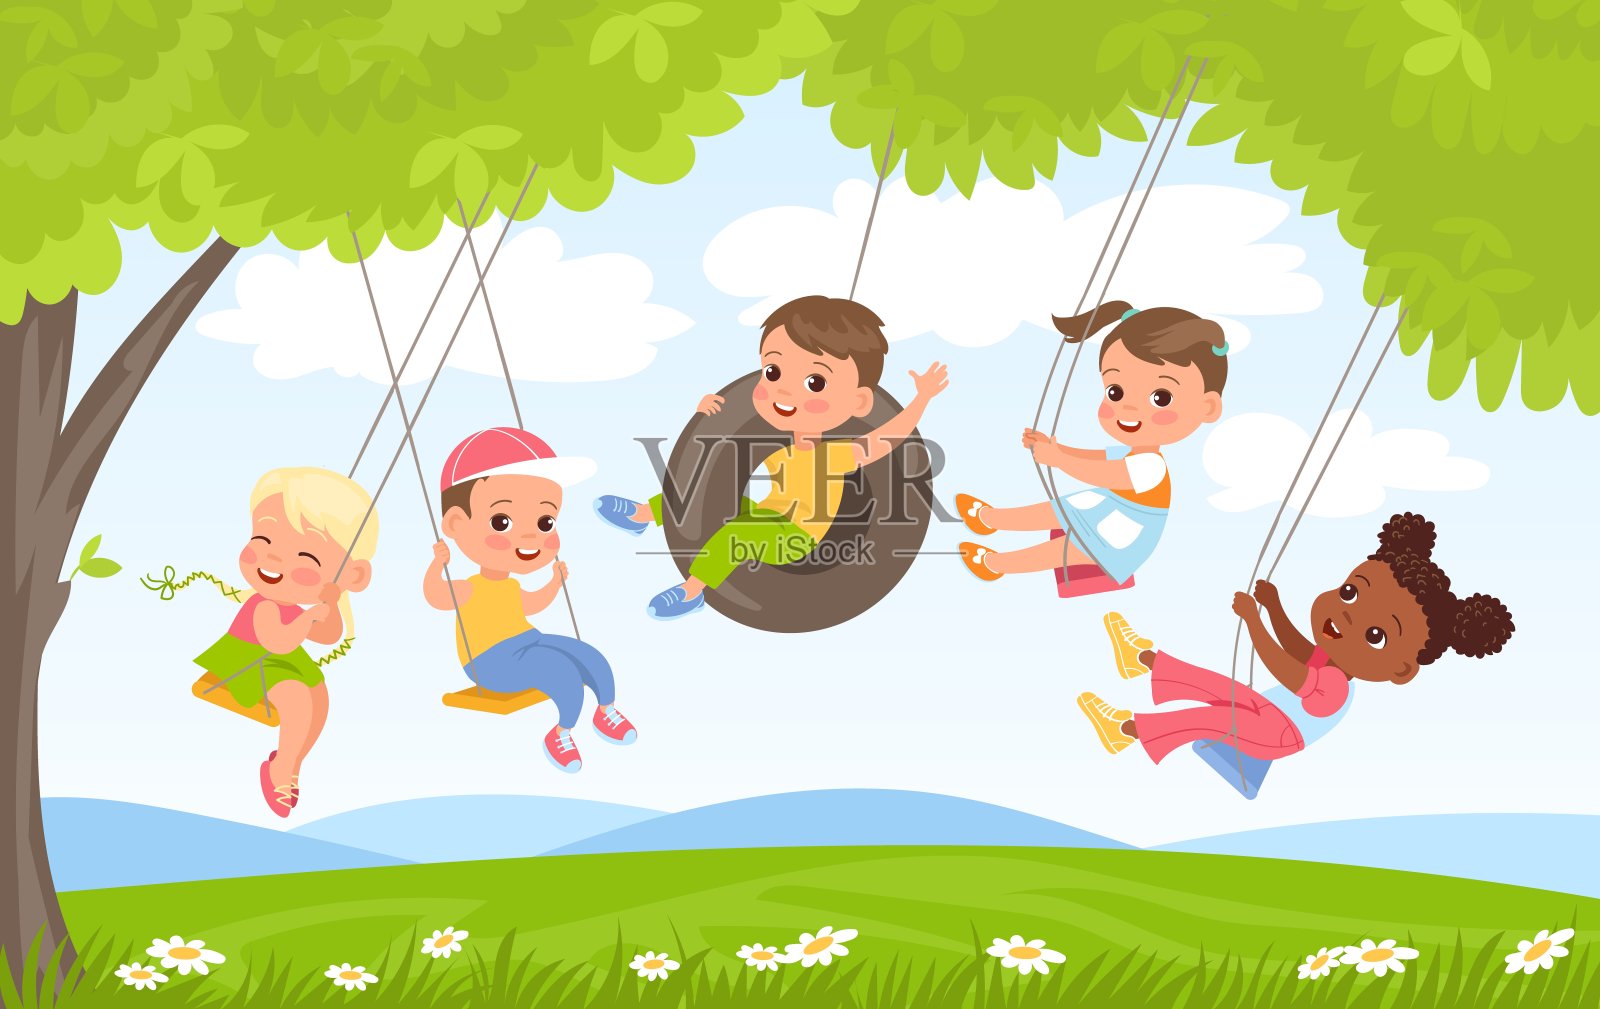 孩子绳波动。孩子们在大自然中玩耍。朋友们在树荫下荡秋千。在轮胎上飞行。女孩和男孩都有乐趣。户外活动。夏季休闲。向量的概念插画图片素材